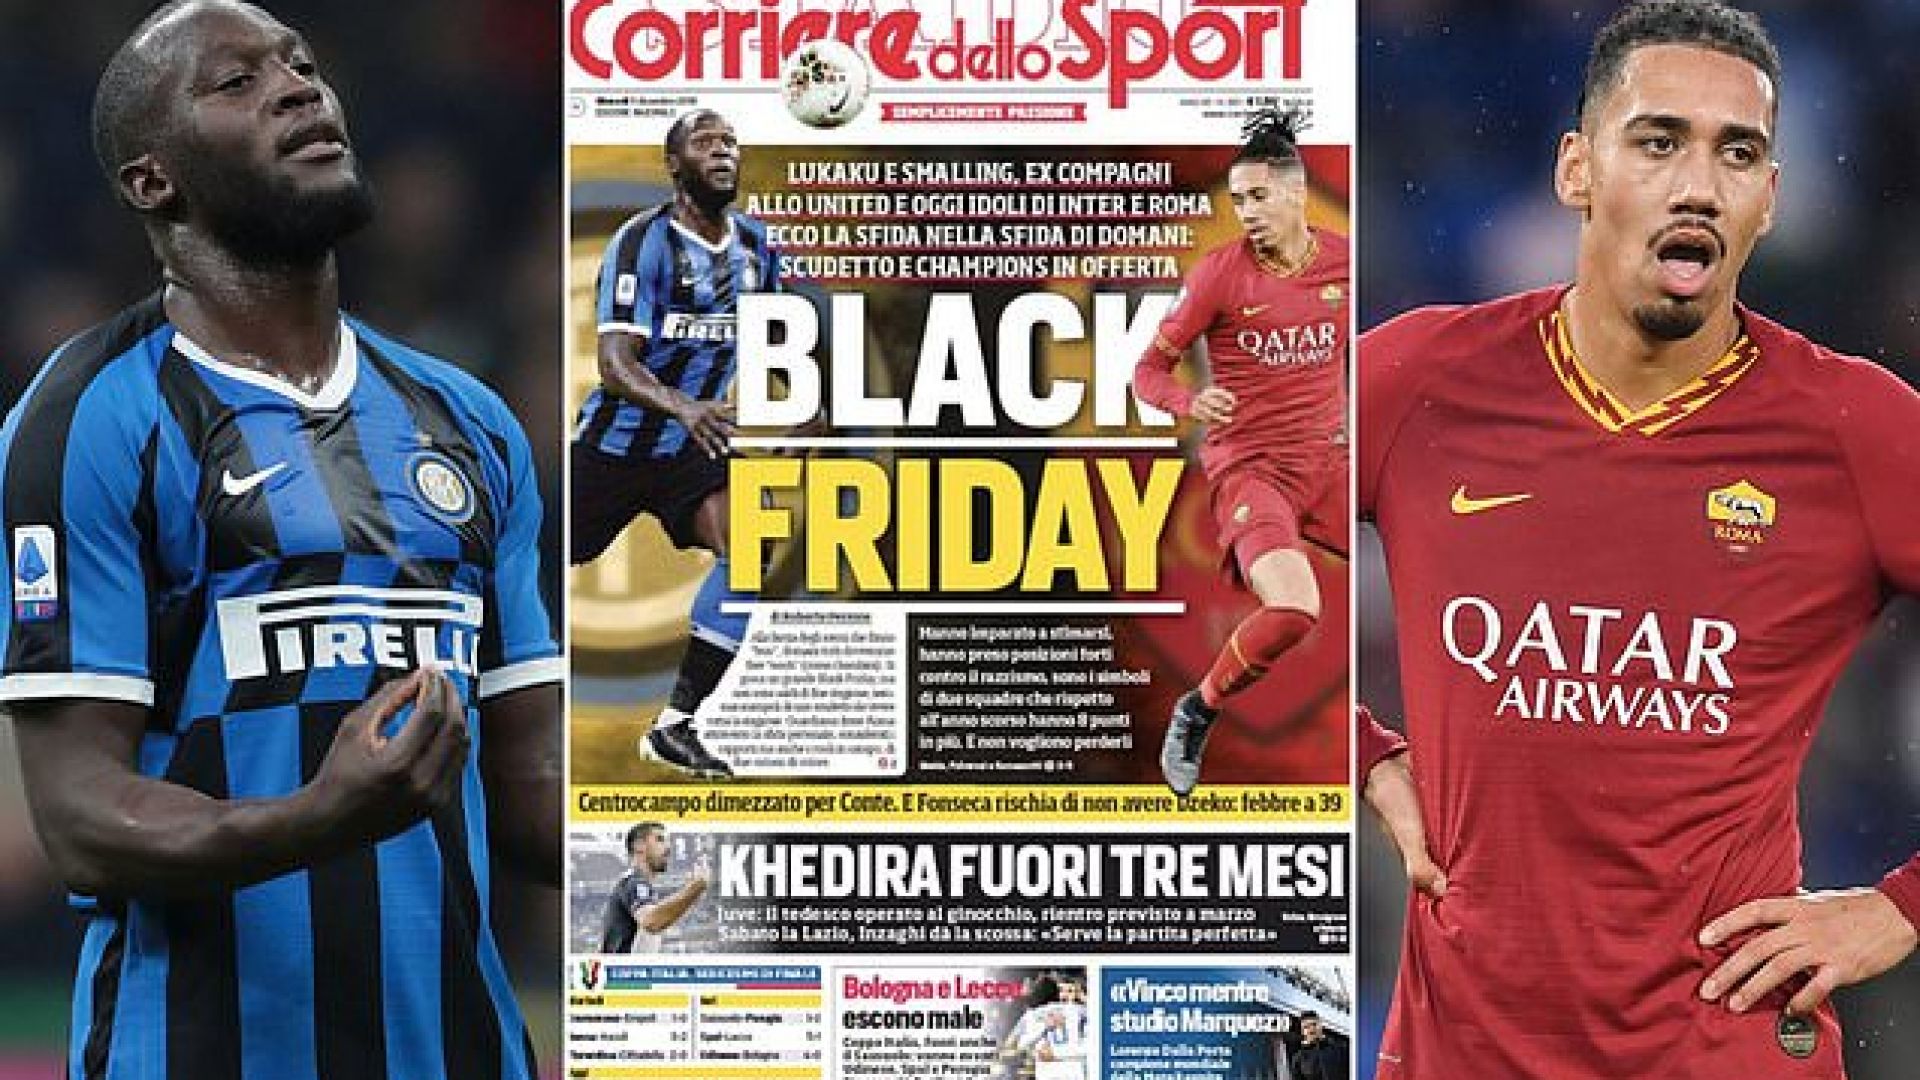 Италиански вестник създаде расистки скандал със заглавие преди Интер - Рома